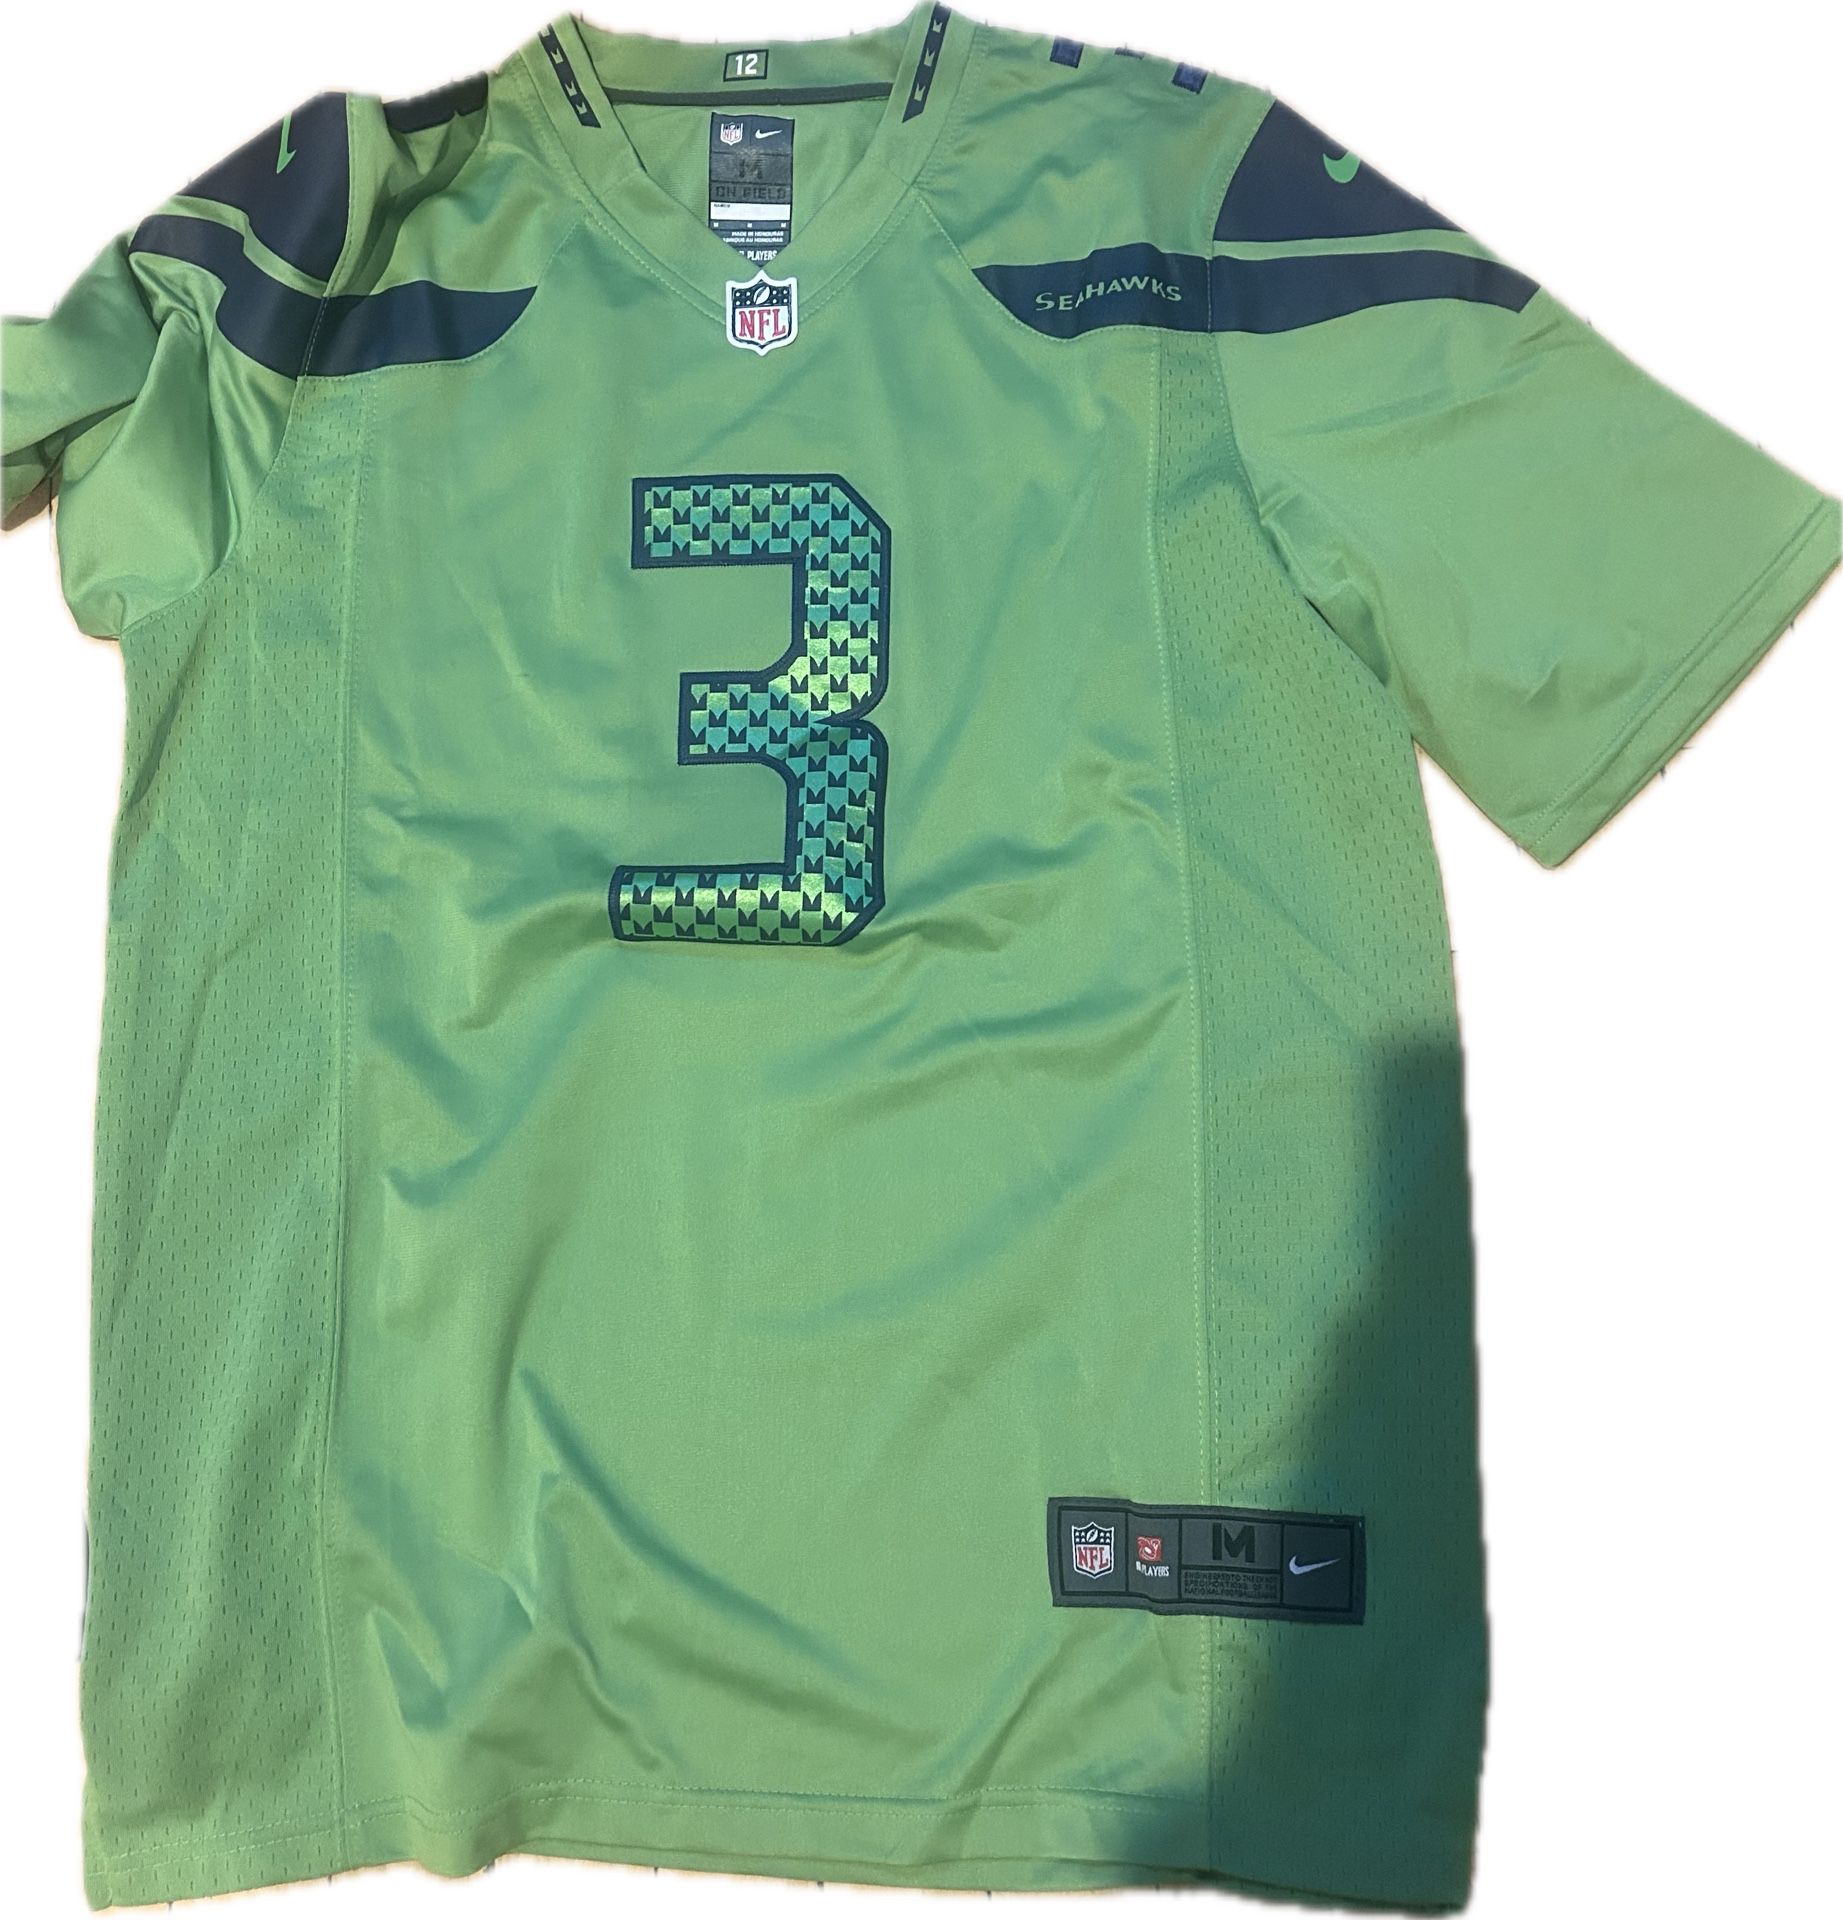 Nike NFL Seahawks #3 Russell Wilson Neon Green Alternate Jersey Size M